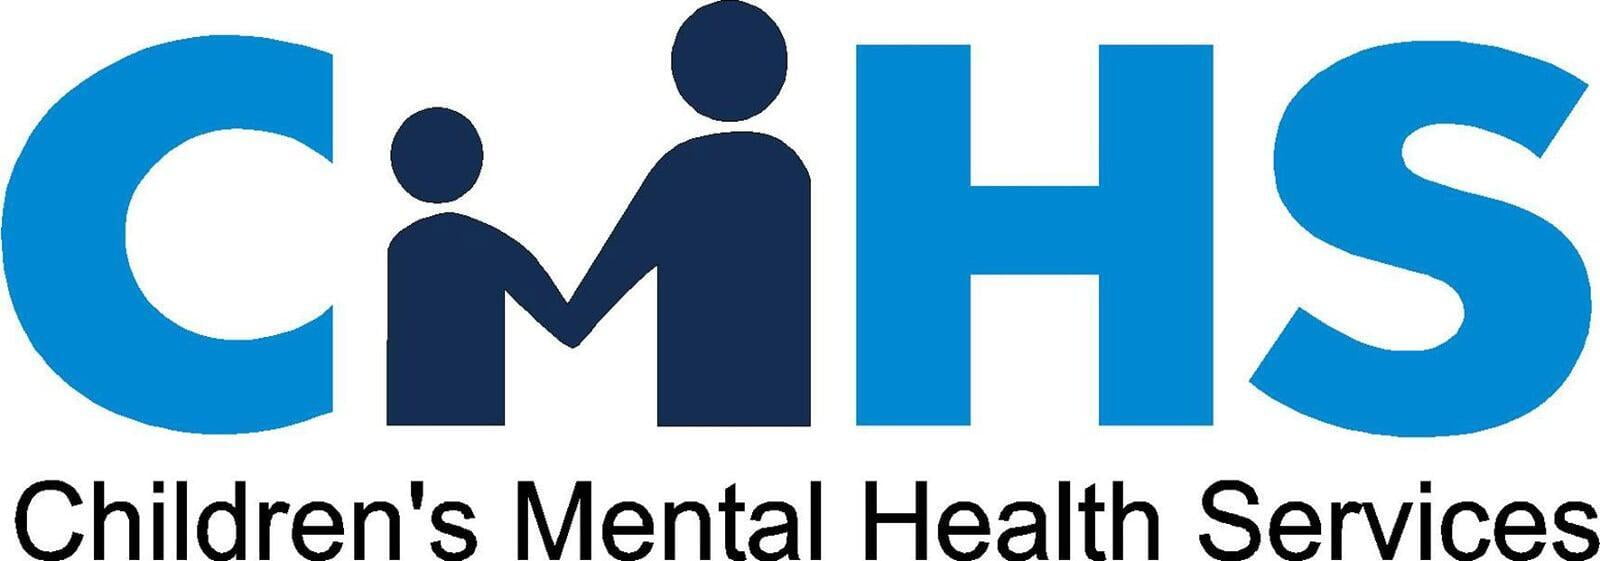 Children's Mental Health Services Website